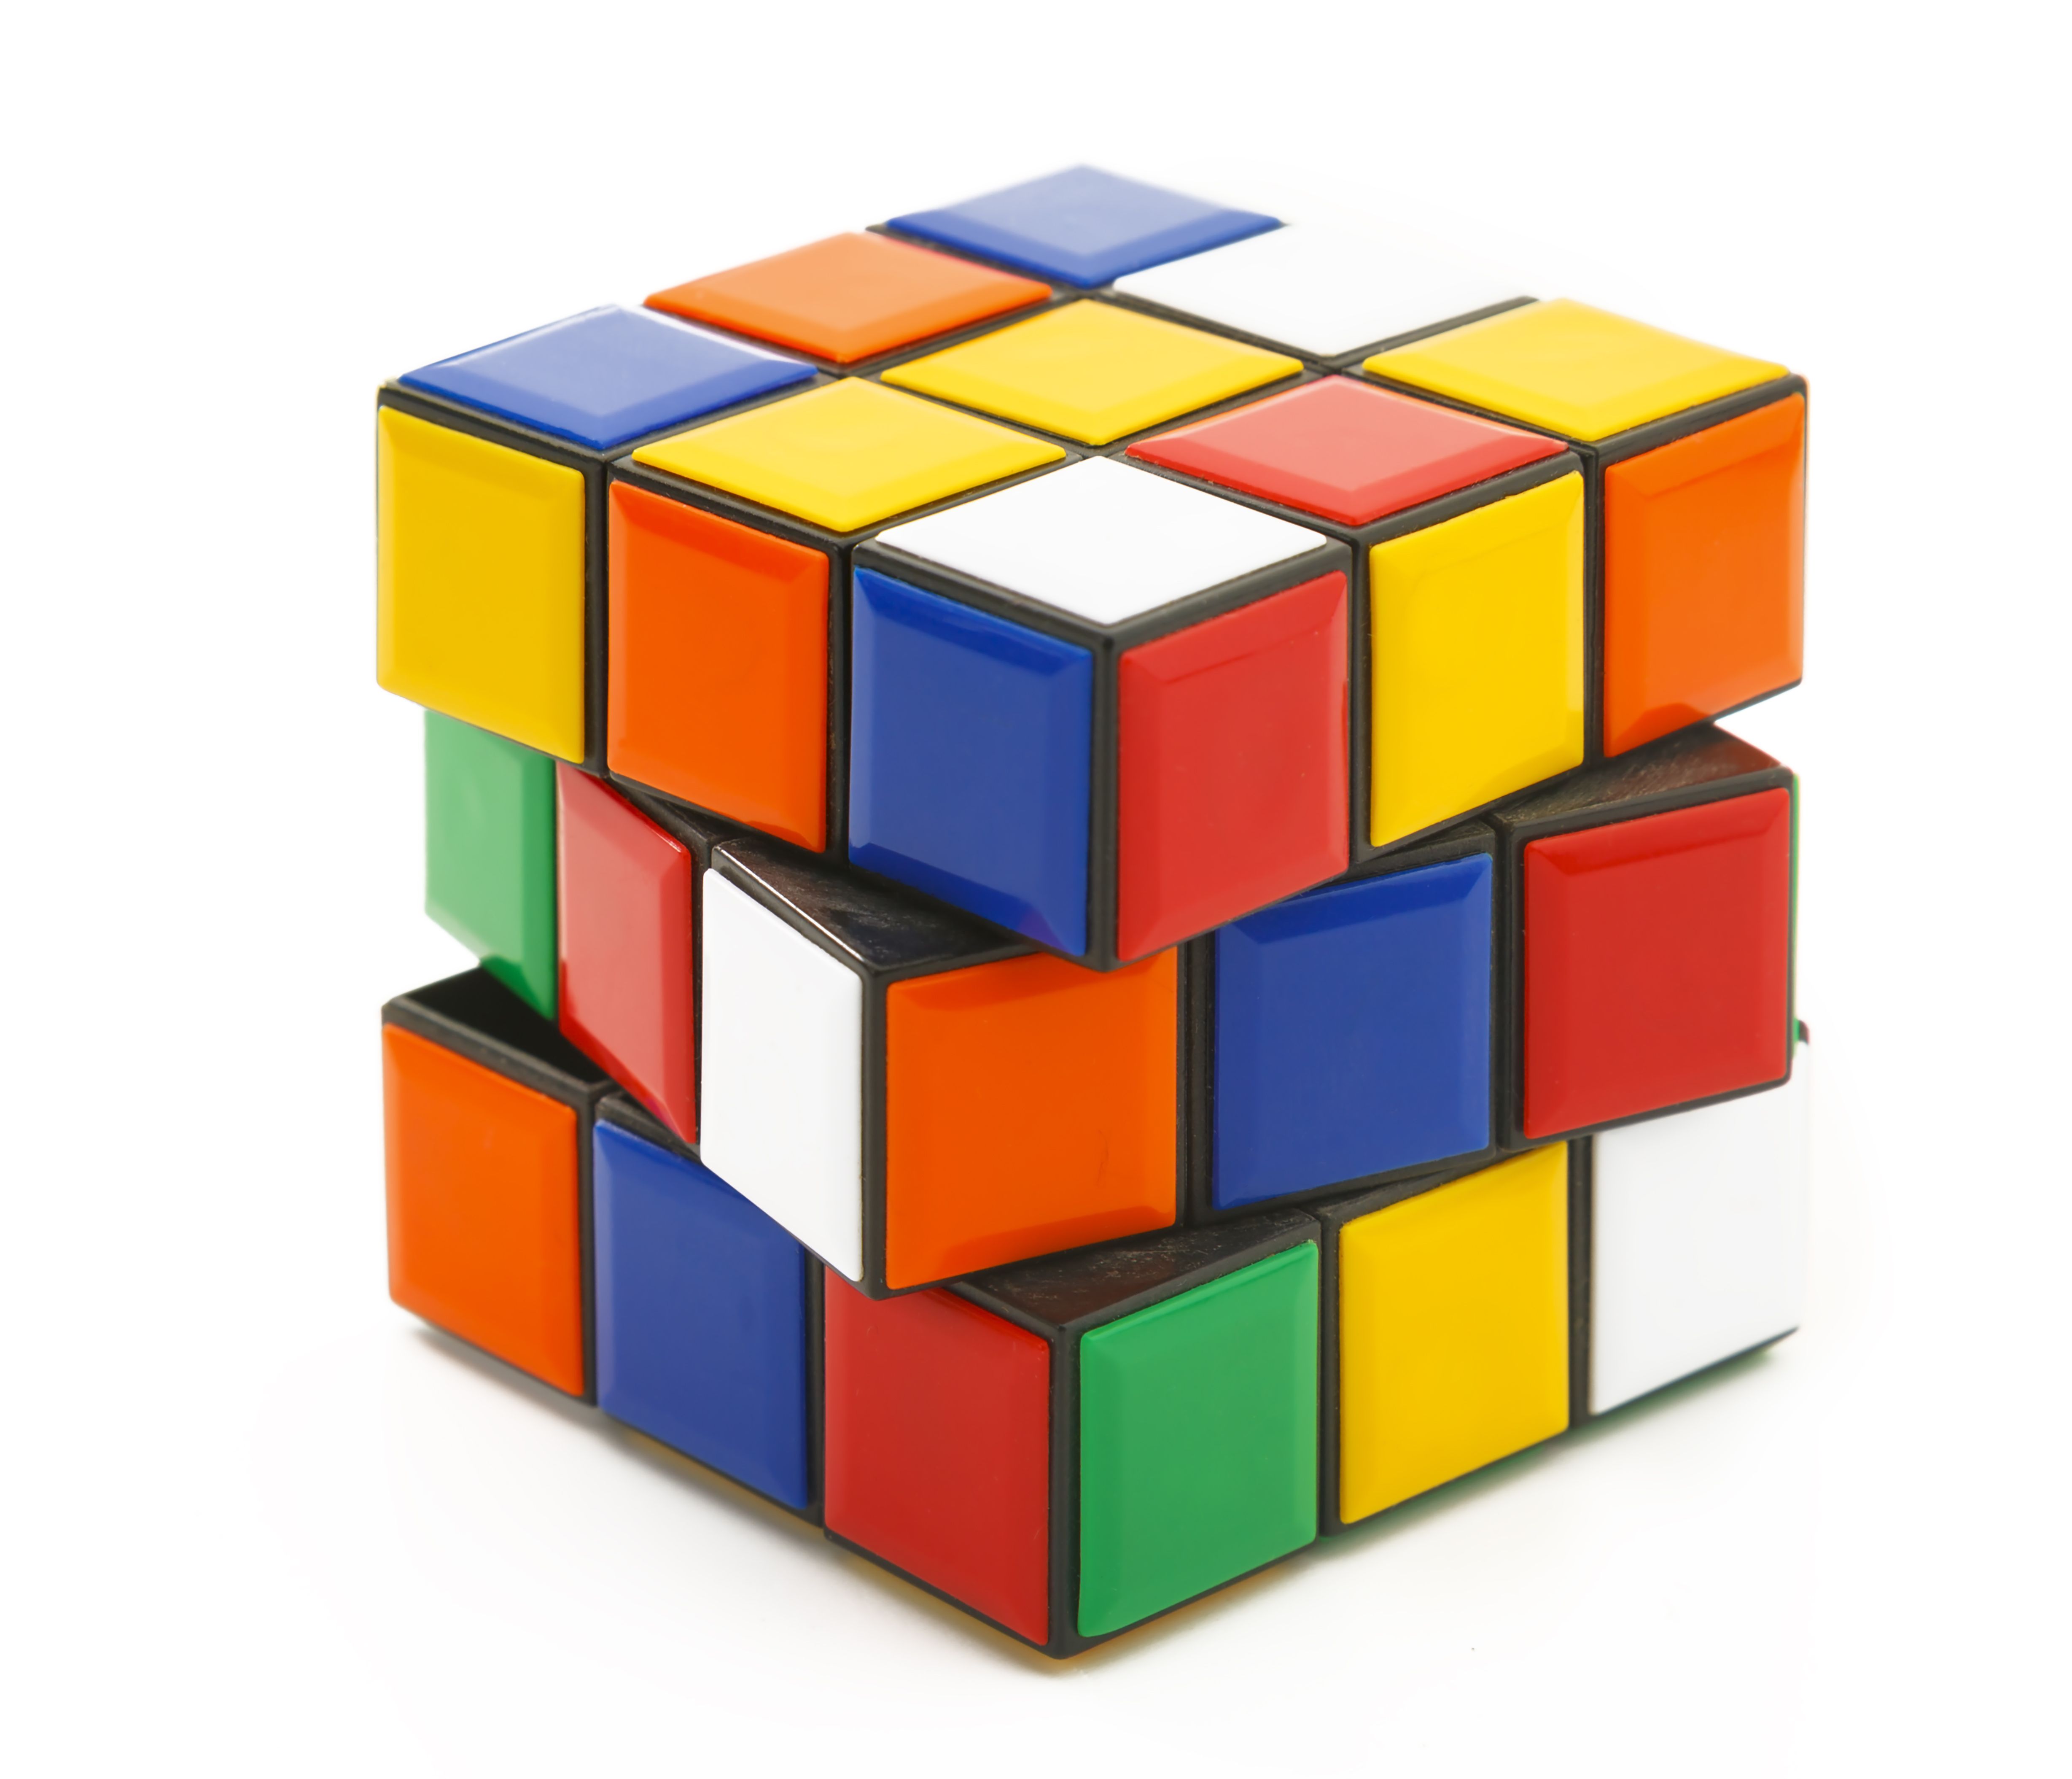 Cubo De Rubik 3x3 Pasos Cómo hacer un cubo de Rubik paso a paso: del más sencillo al 4x4